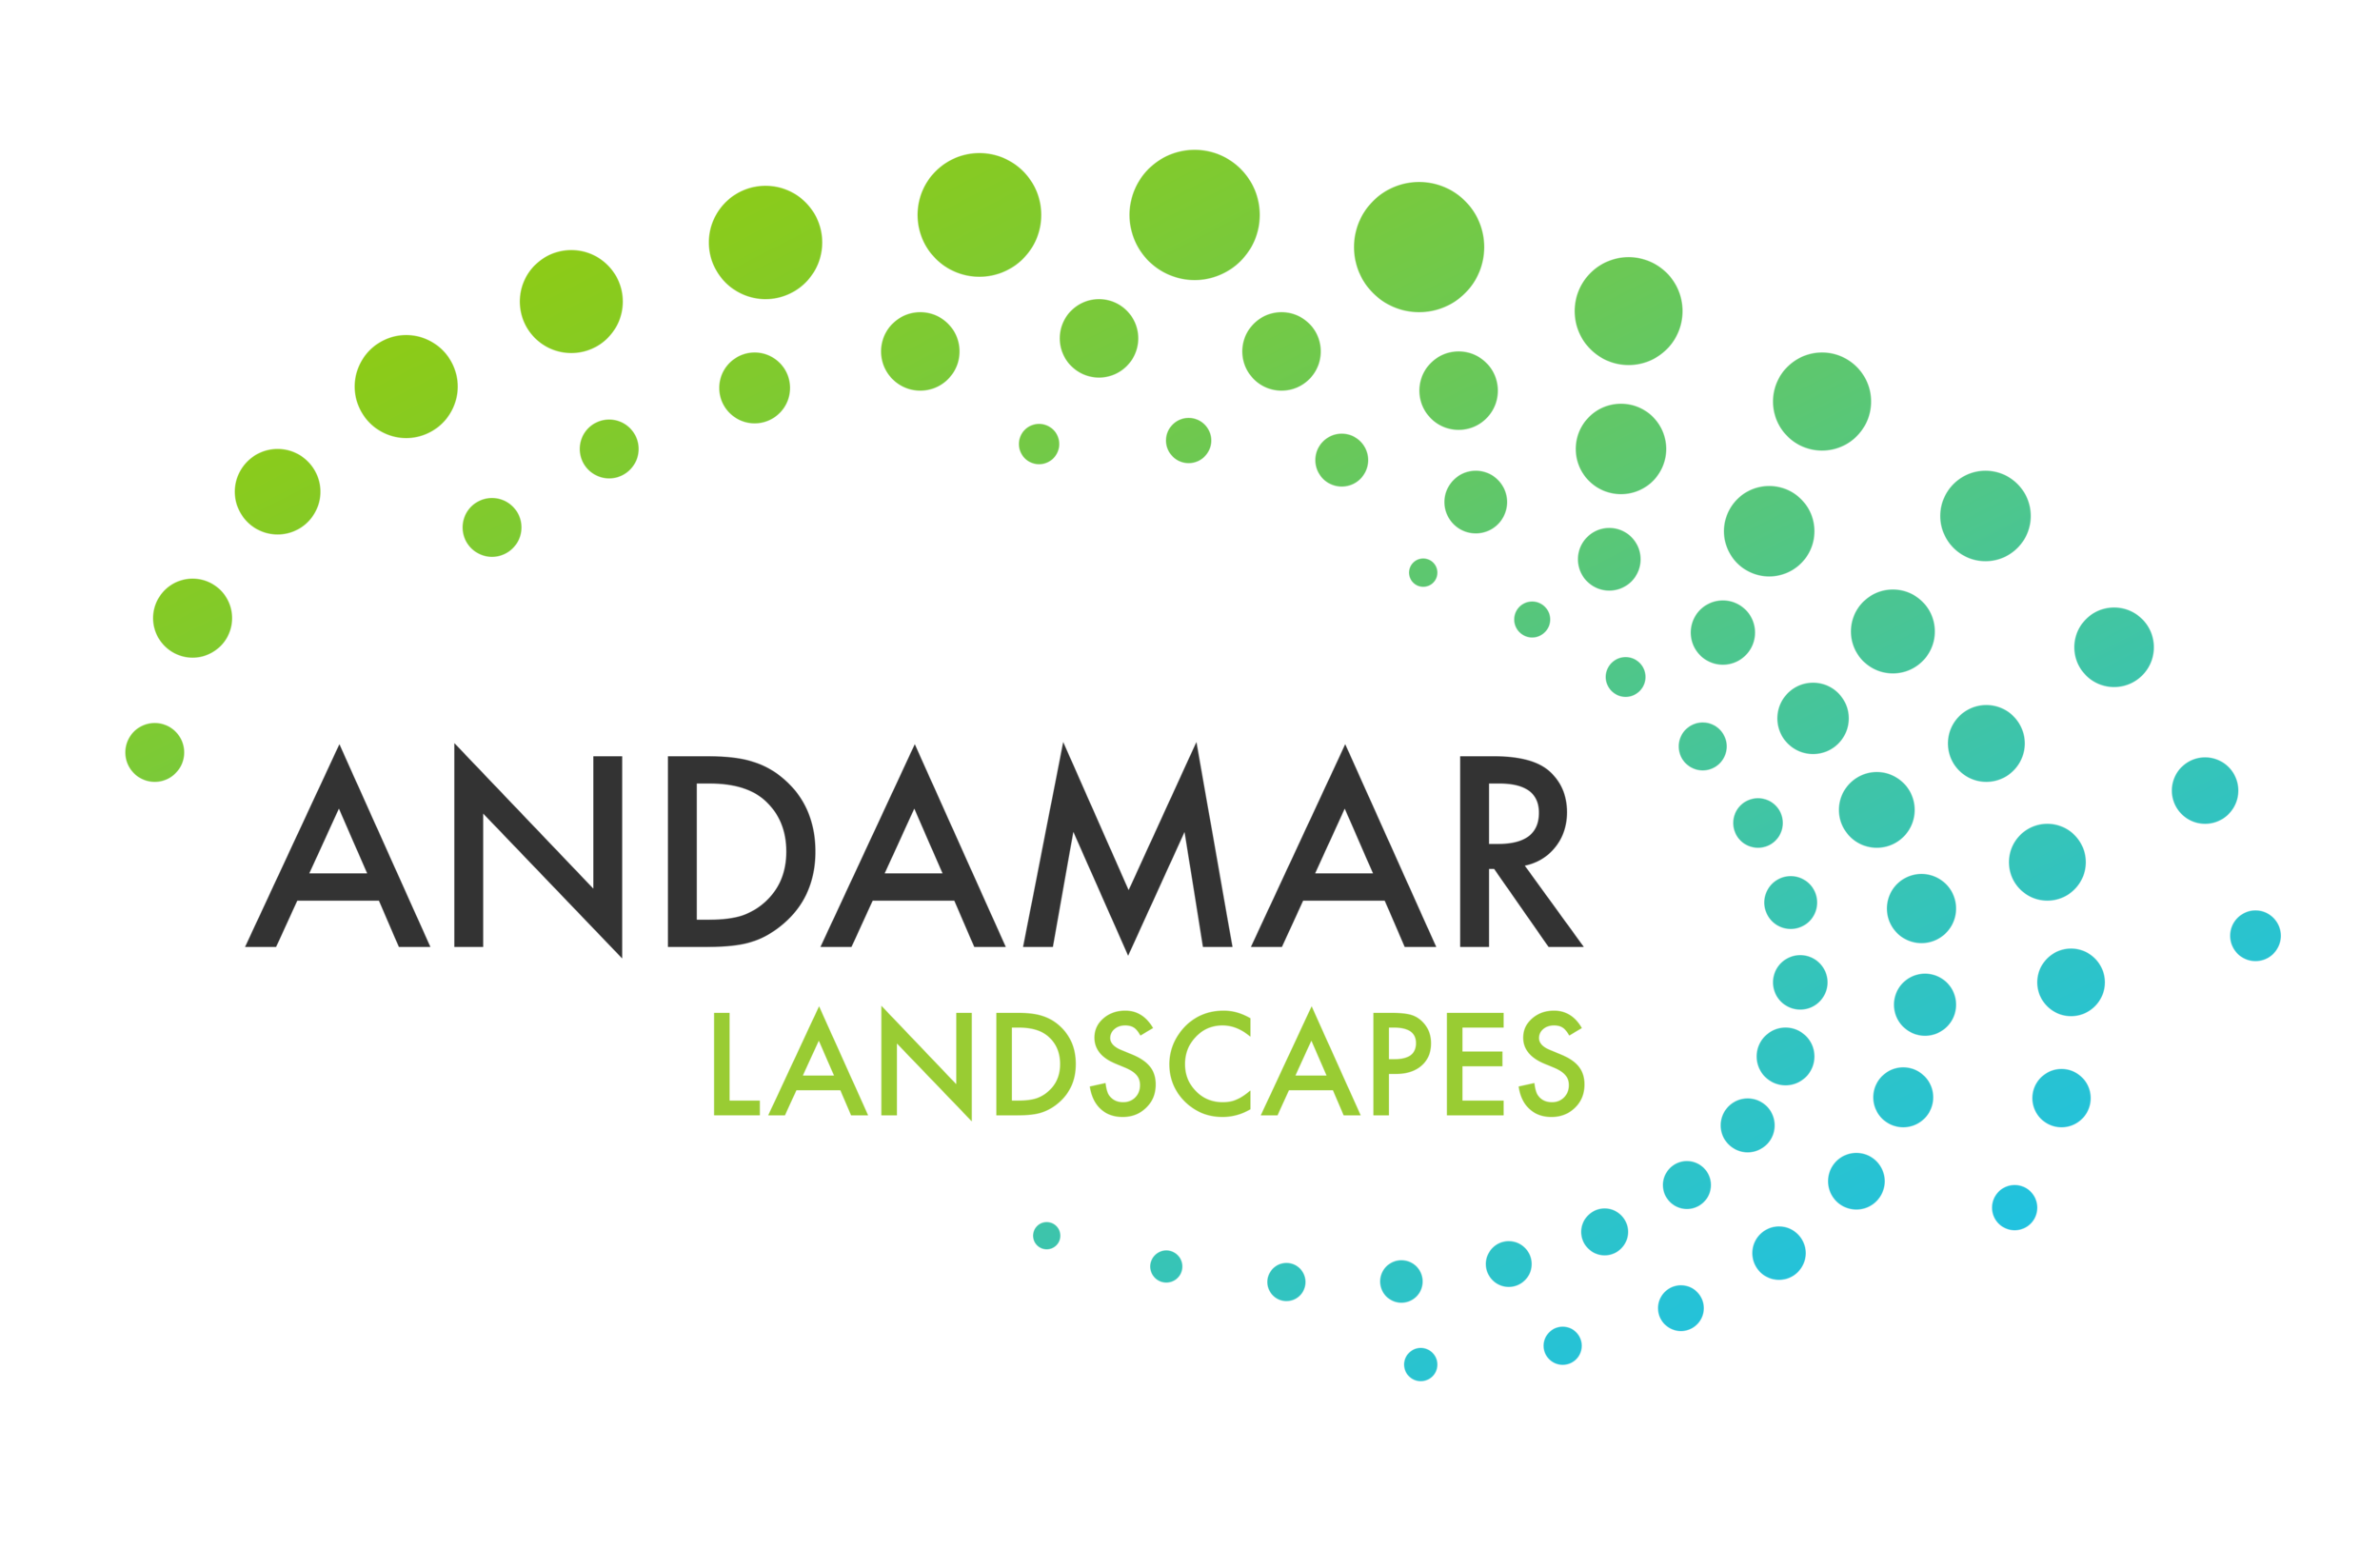 Andamar Landscapes